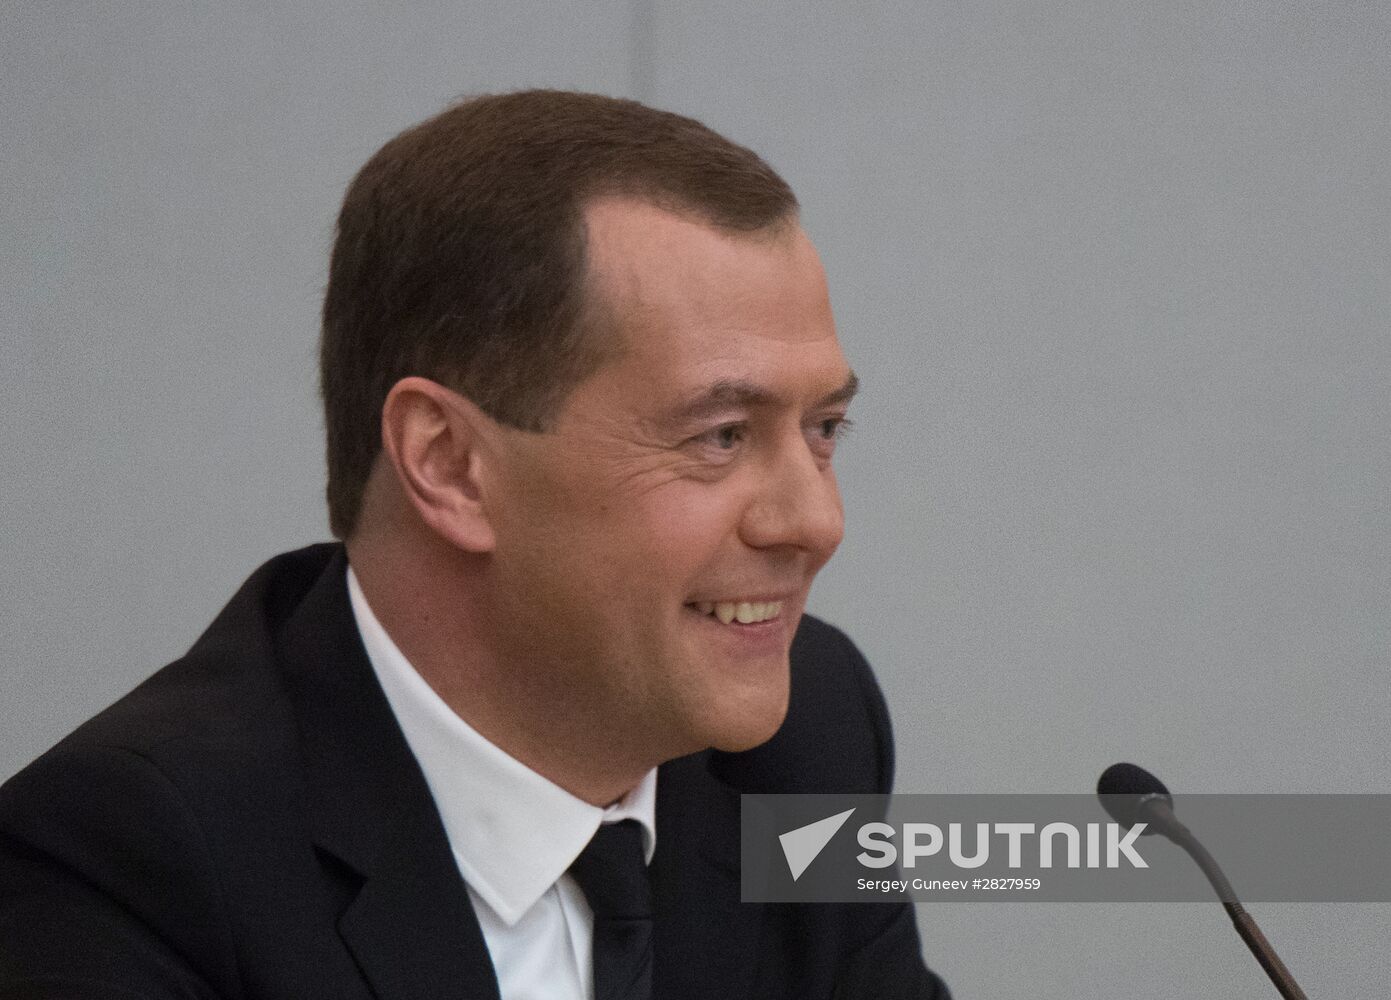 Russian Prime Minister Dmitry Medvedev speaks at the State Duma